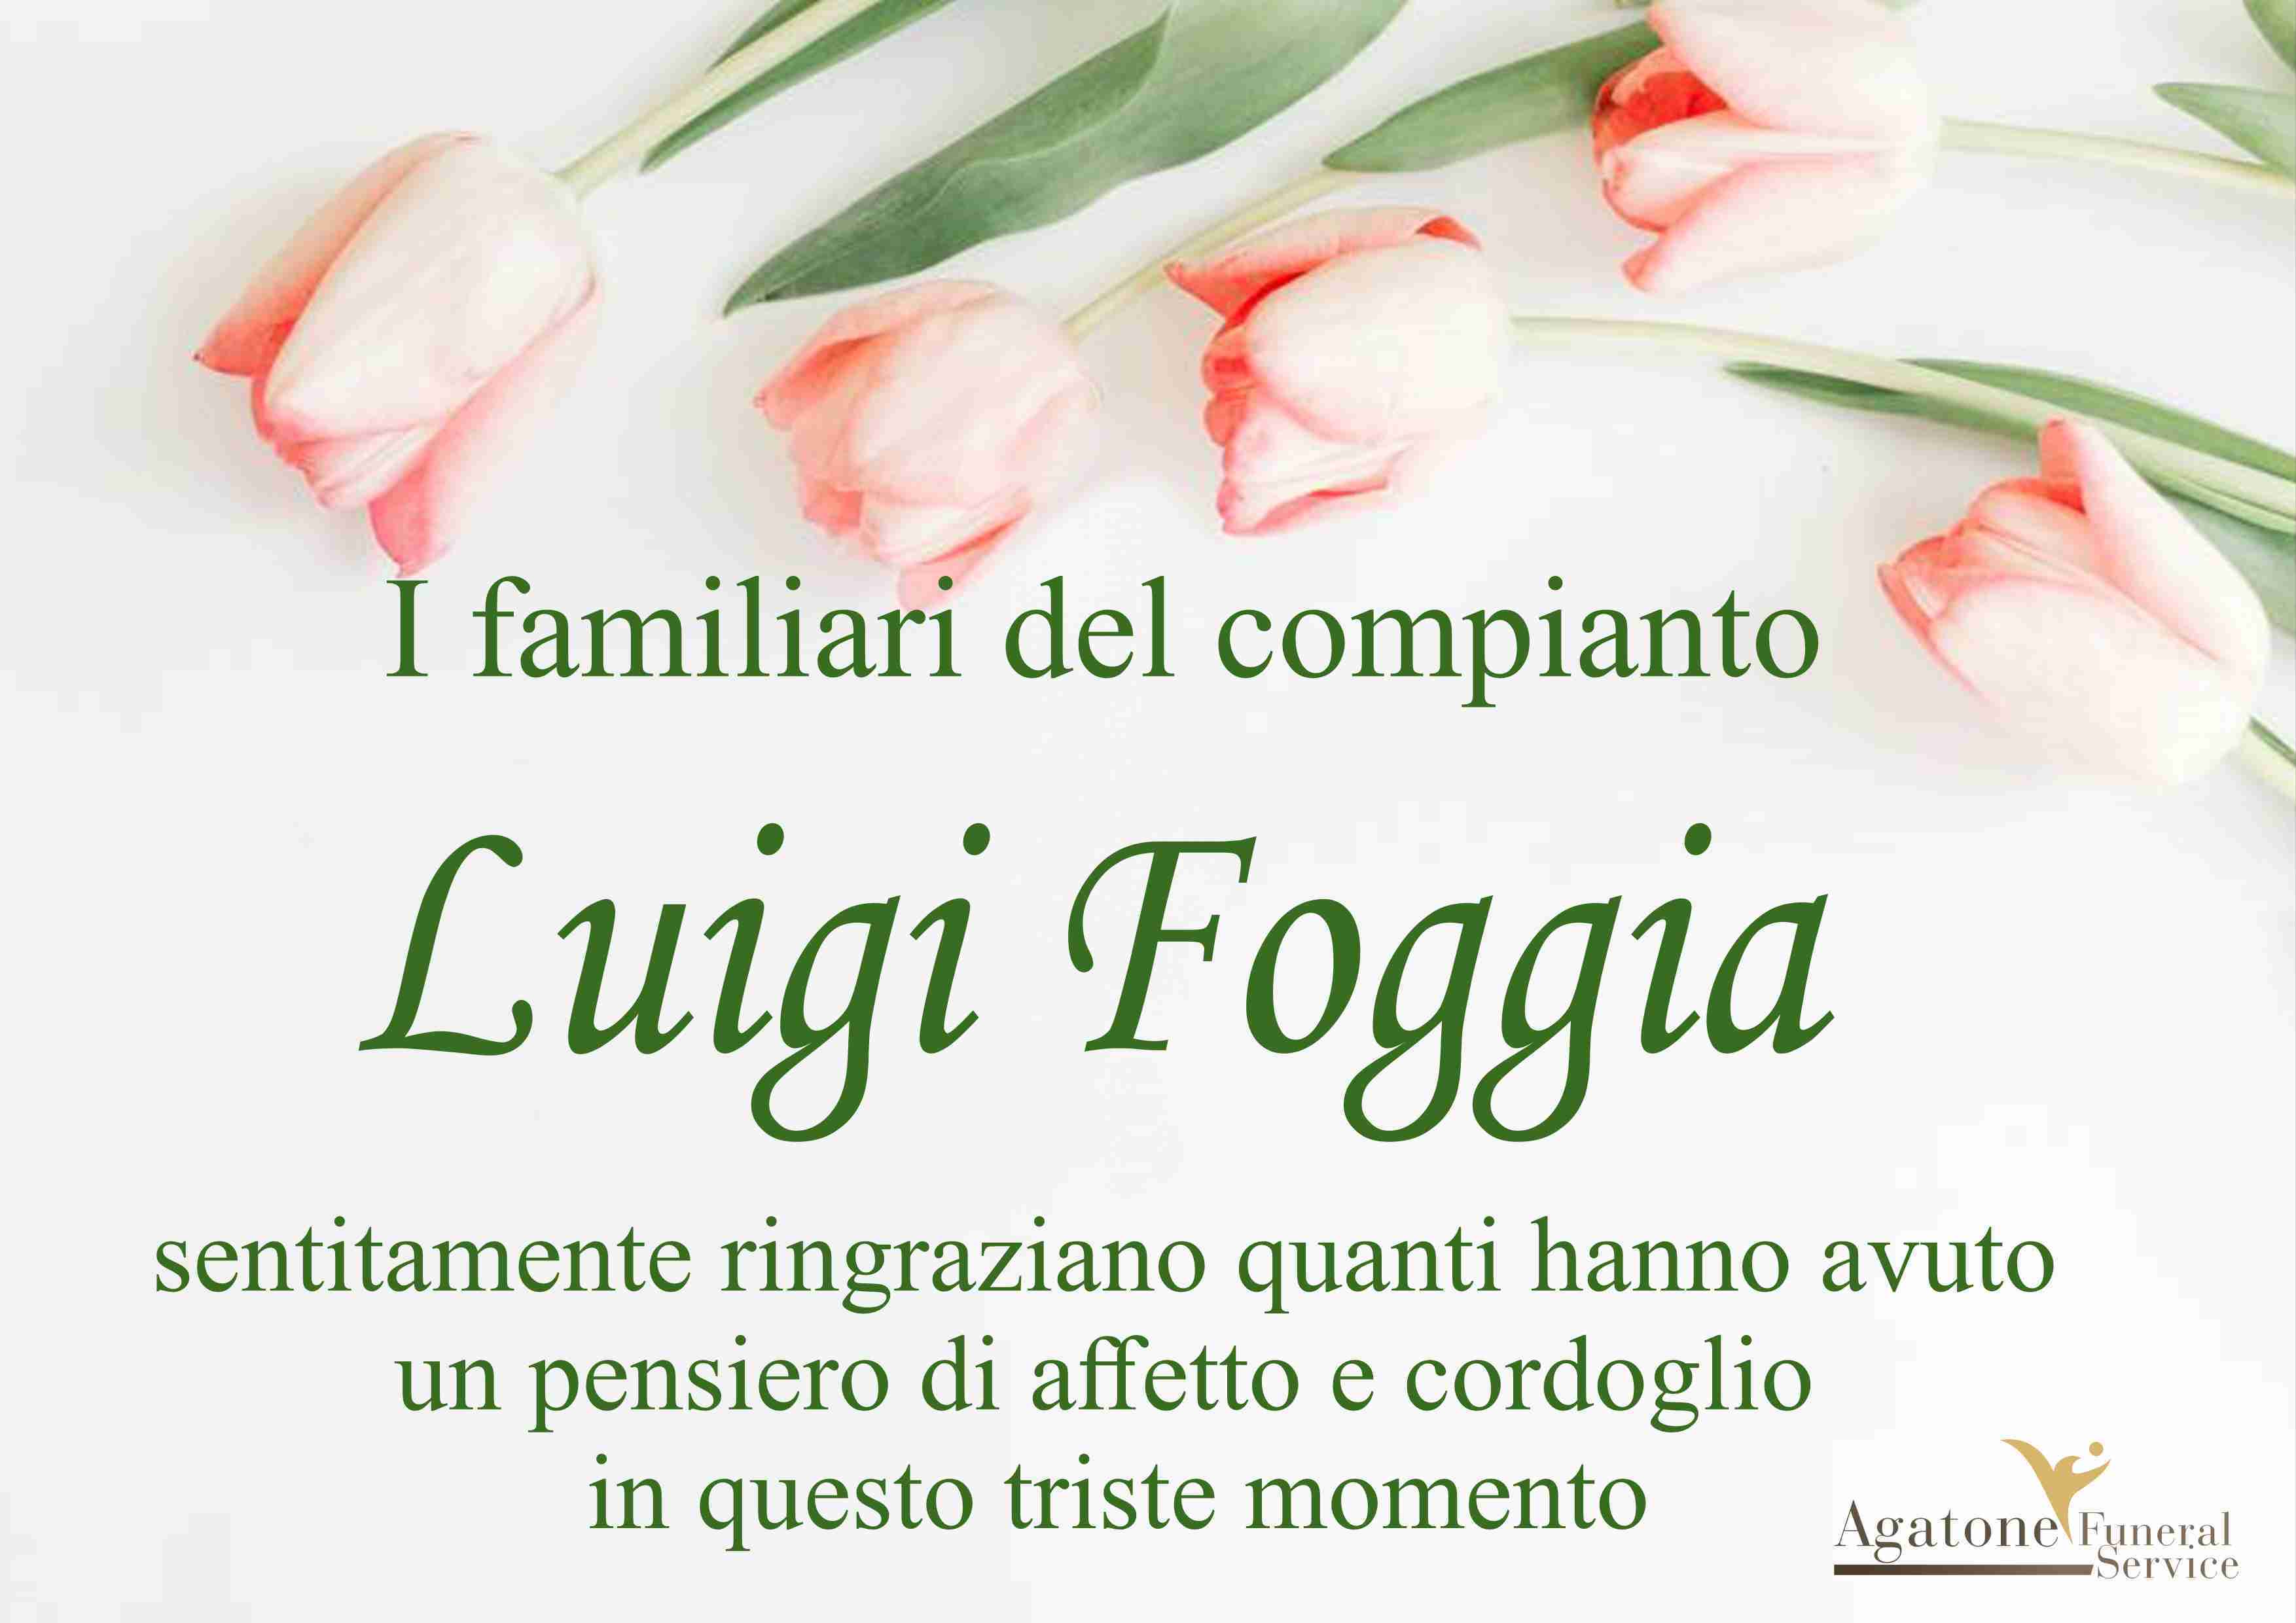 Luigi Foggia